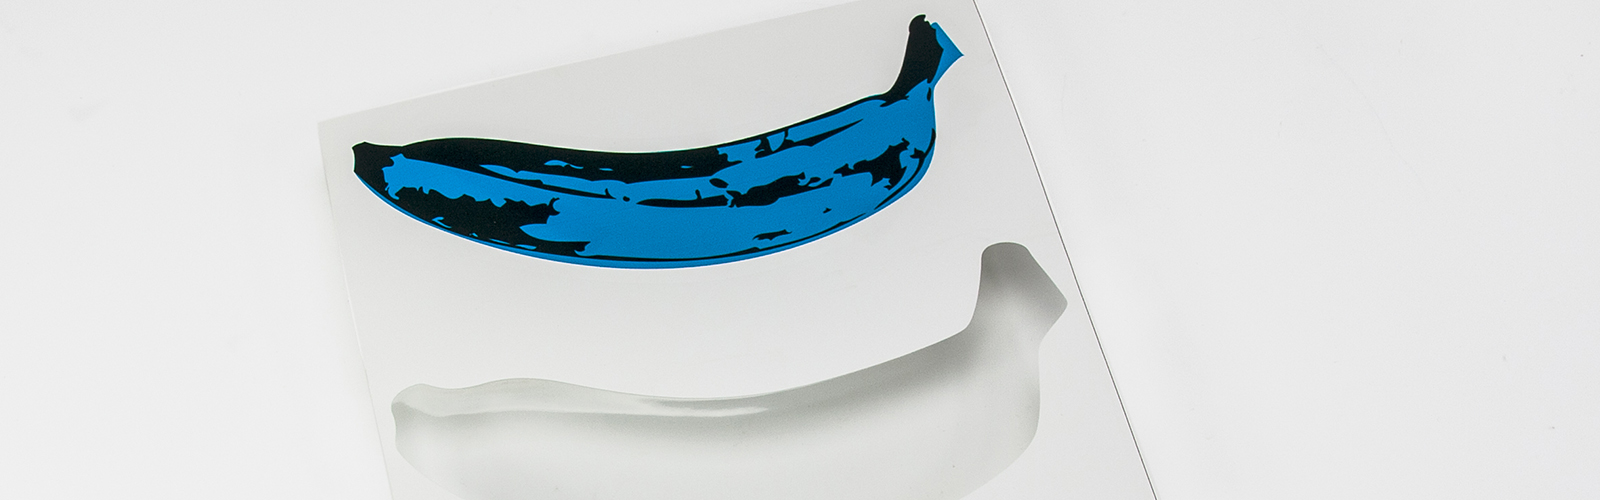 Freiformschnitt PVC Folie Blaue Banane